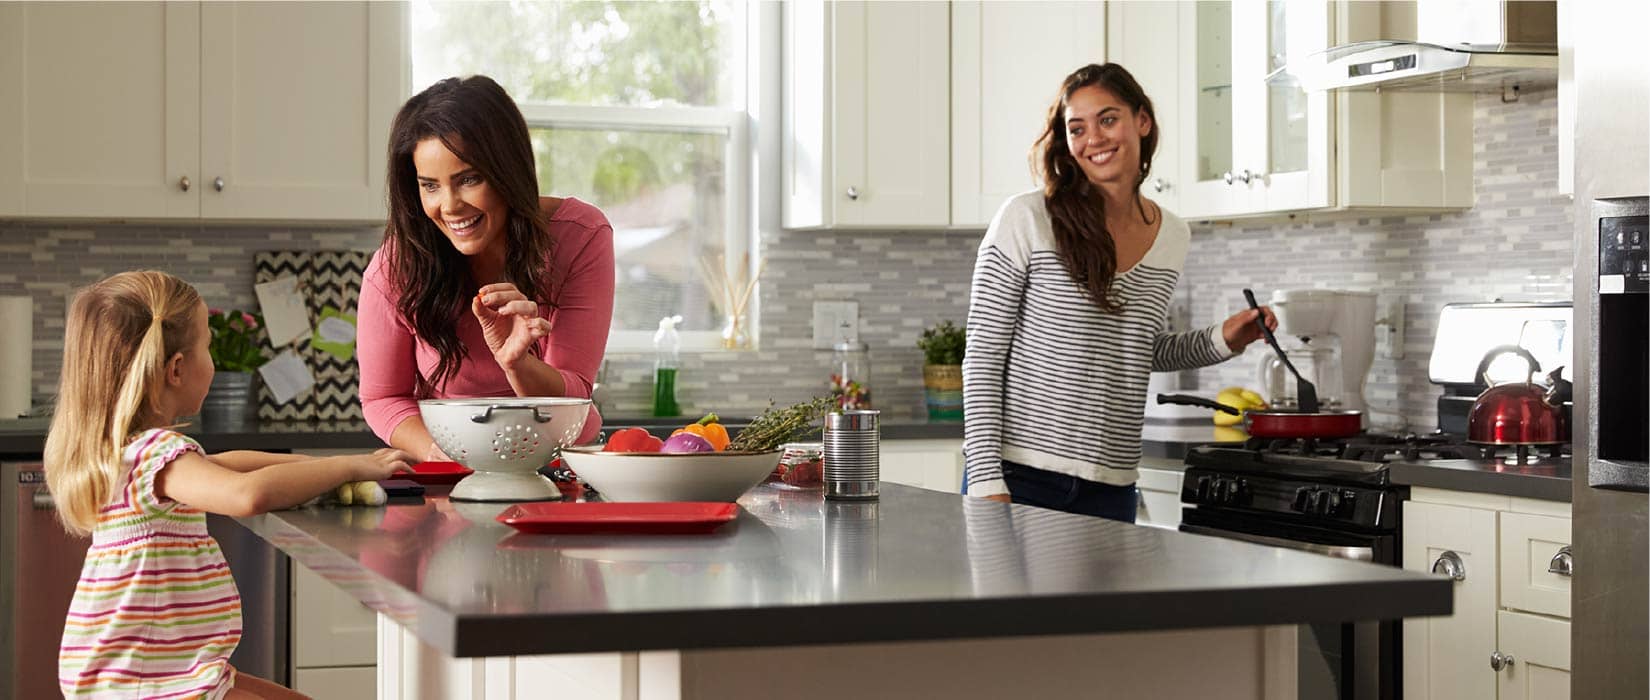 Image of 3 women around a kitchen island.